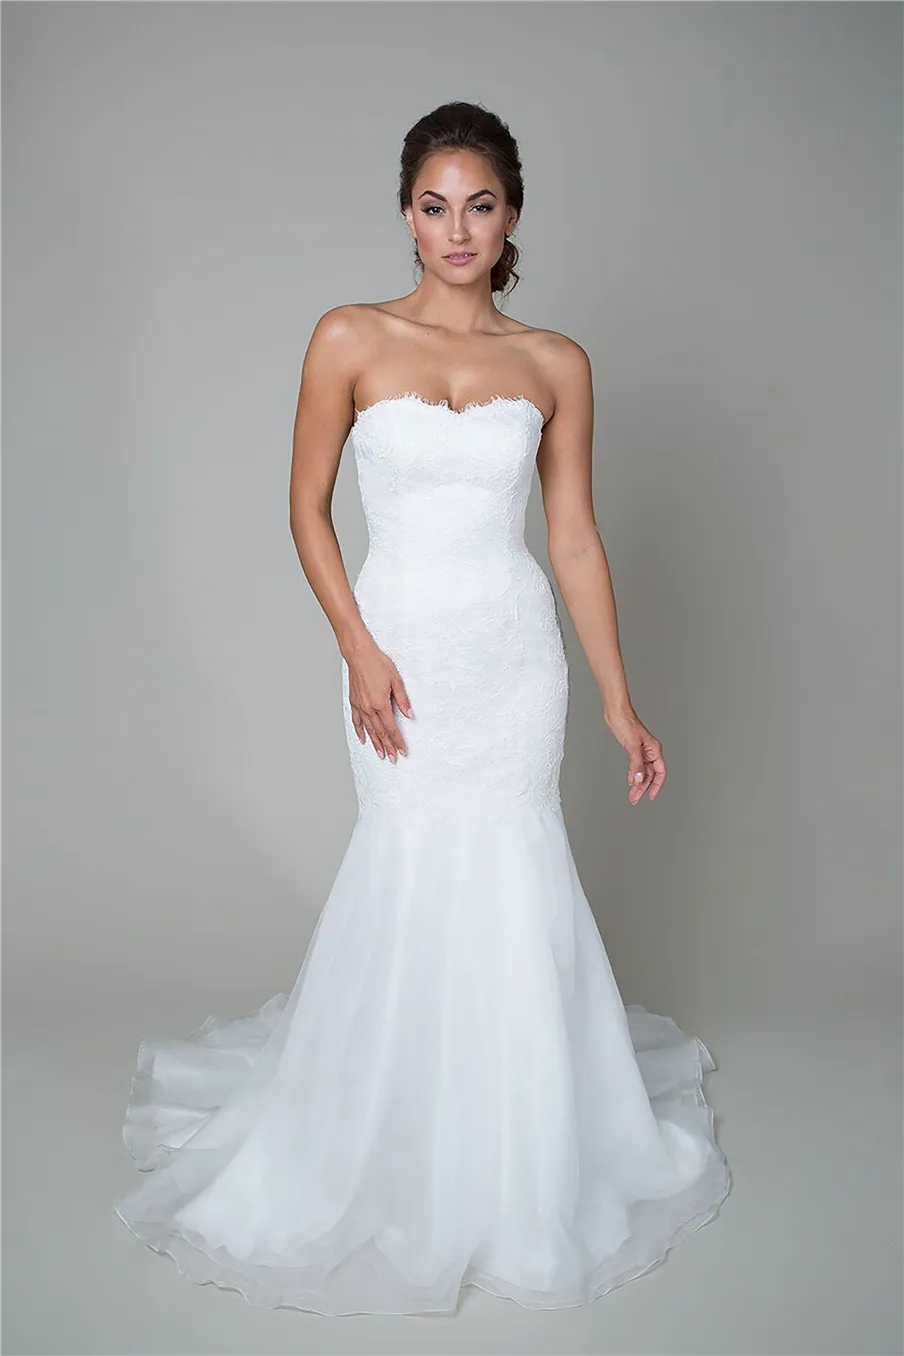 La robe de mariée de style trompette comprend une taille basse, un décolleté en cœur, une jupe fluide en organza et une robe de mariée en dentelle avec cordon